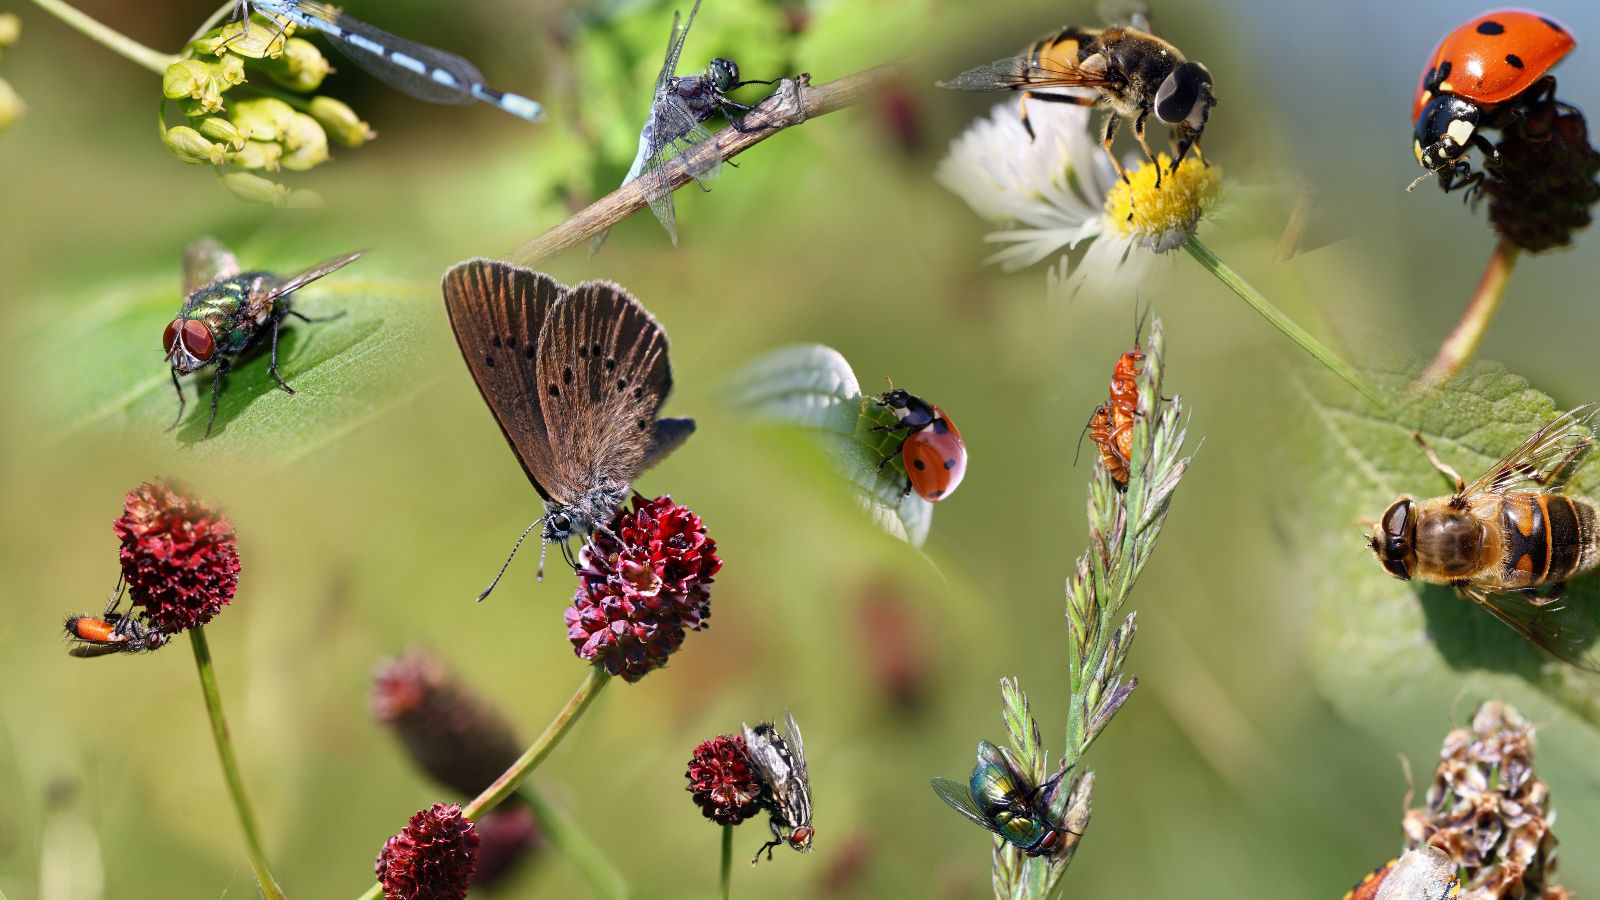 Die digitale Kollage zeigt diverse heimische Insekten auf verschiedenen Blütenständen.